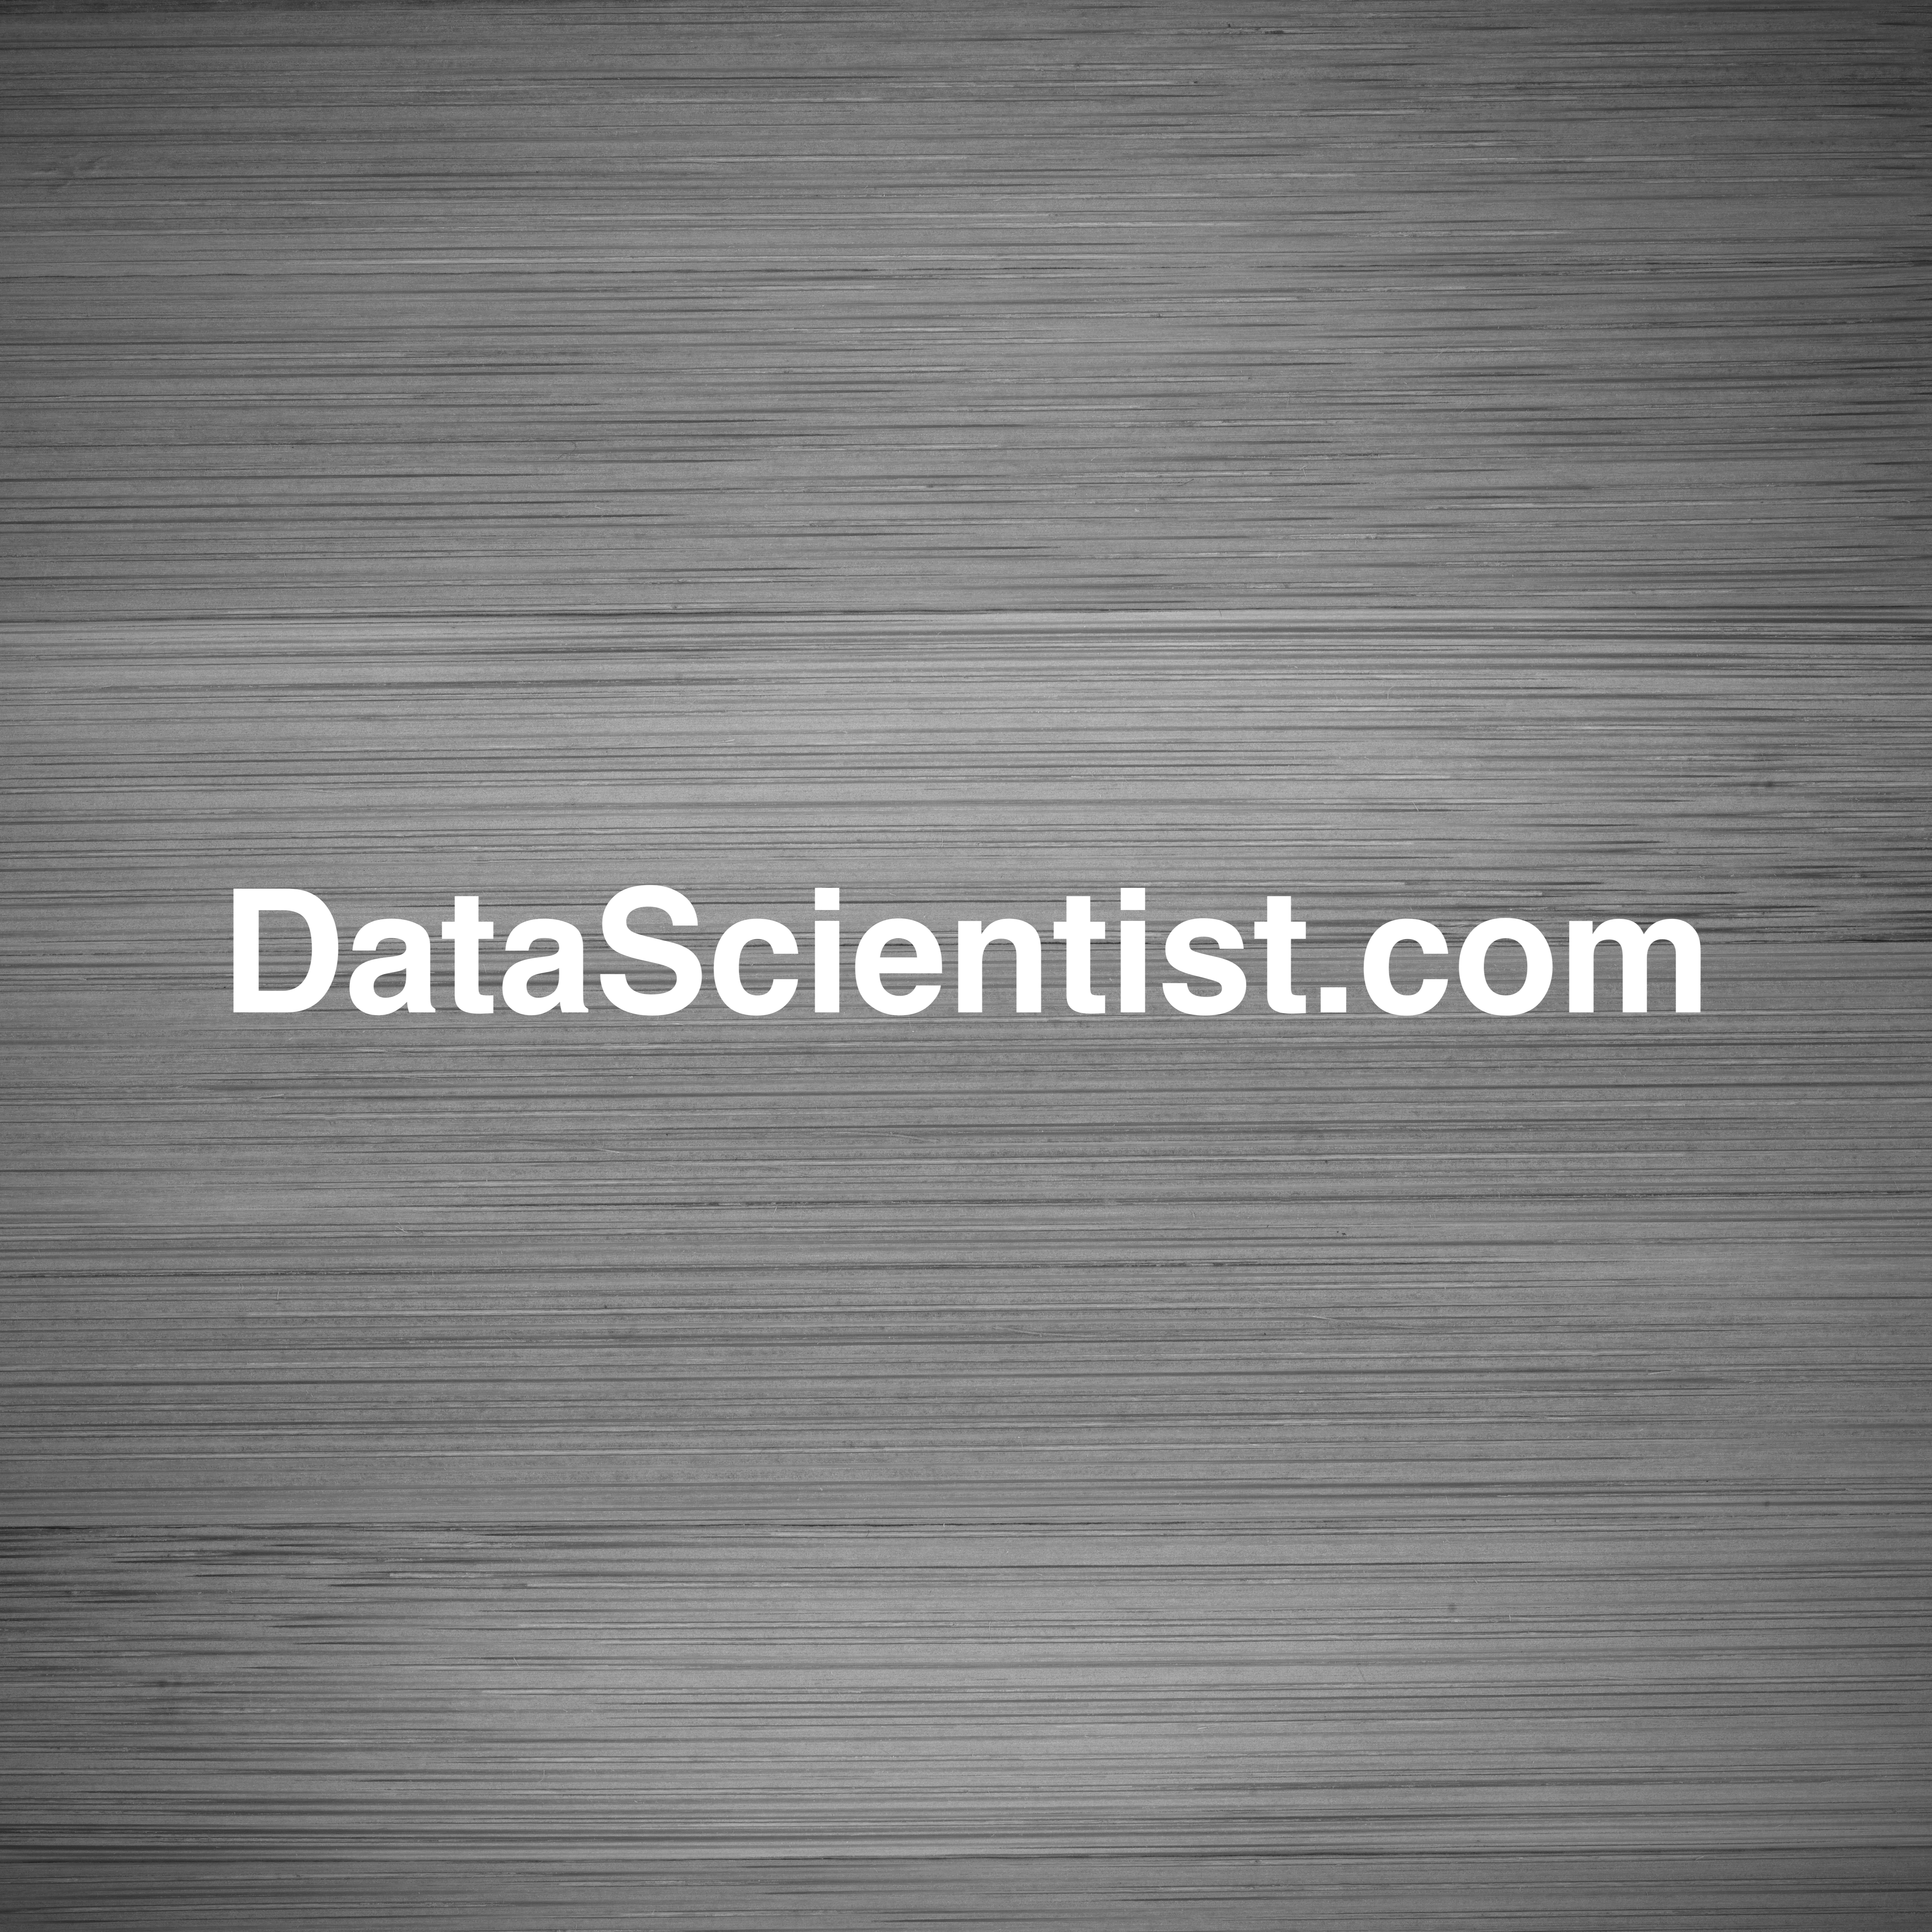 DataScientist.com